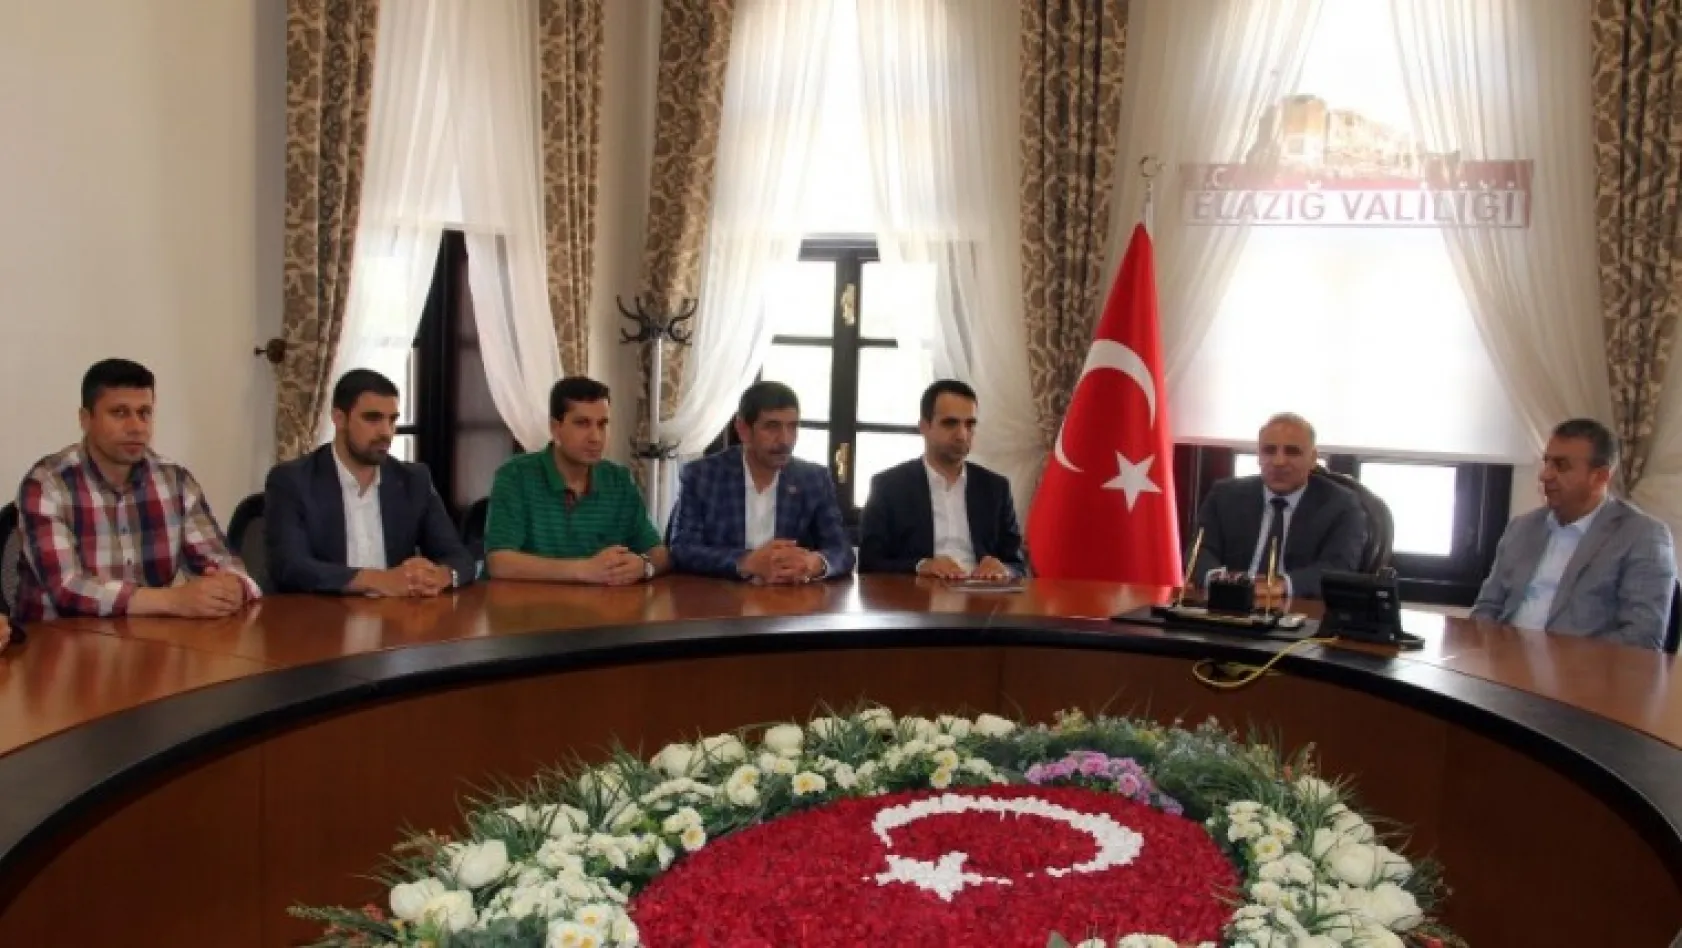 Elazığspor'dan Vali Zorluoğlu'na ziyaret